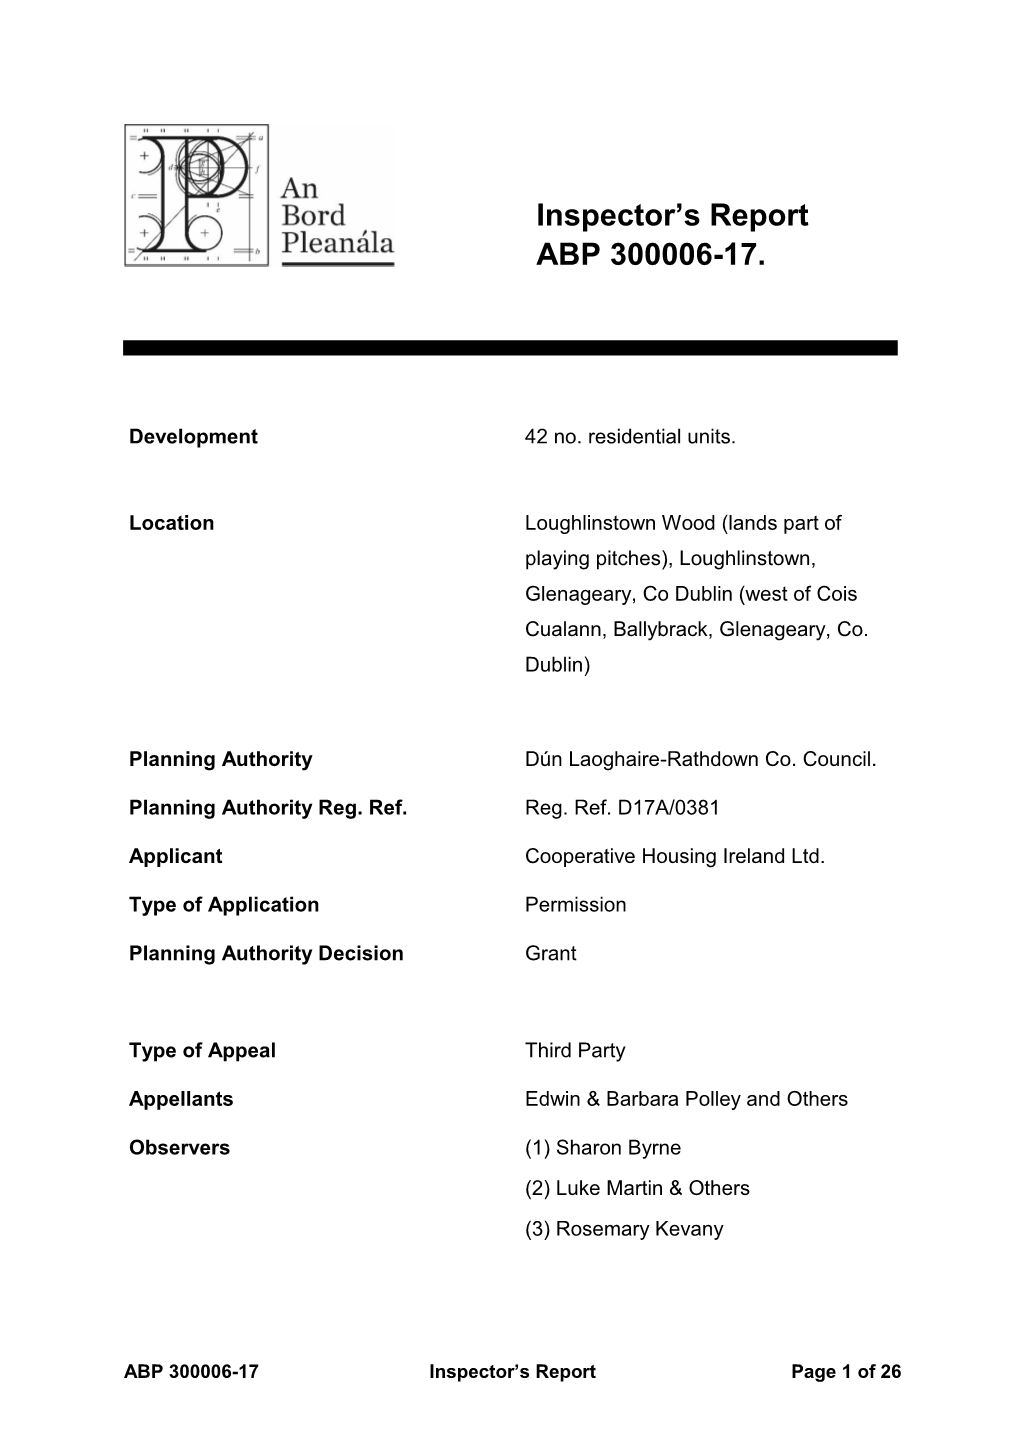 Inspector's Report ABP 300006-17